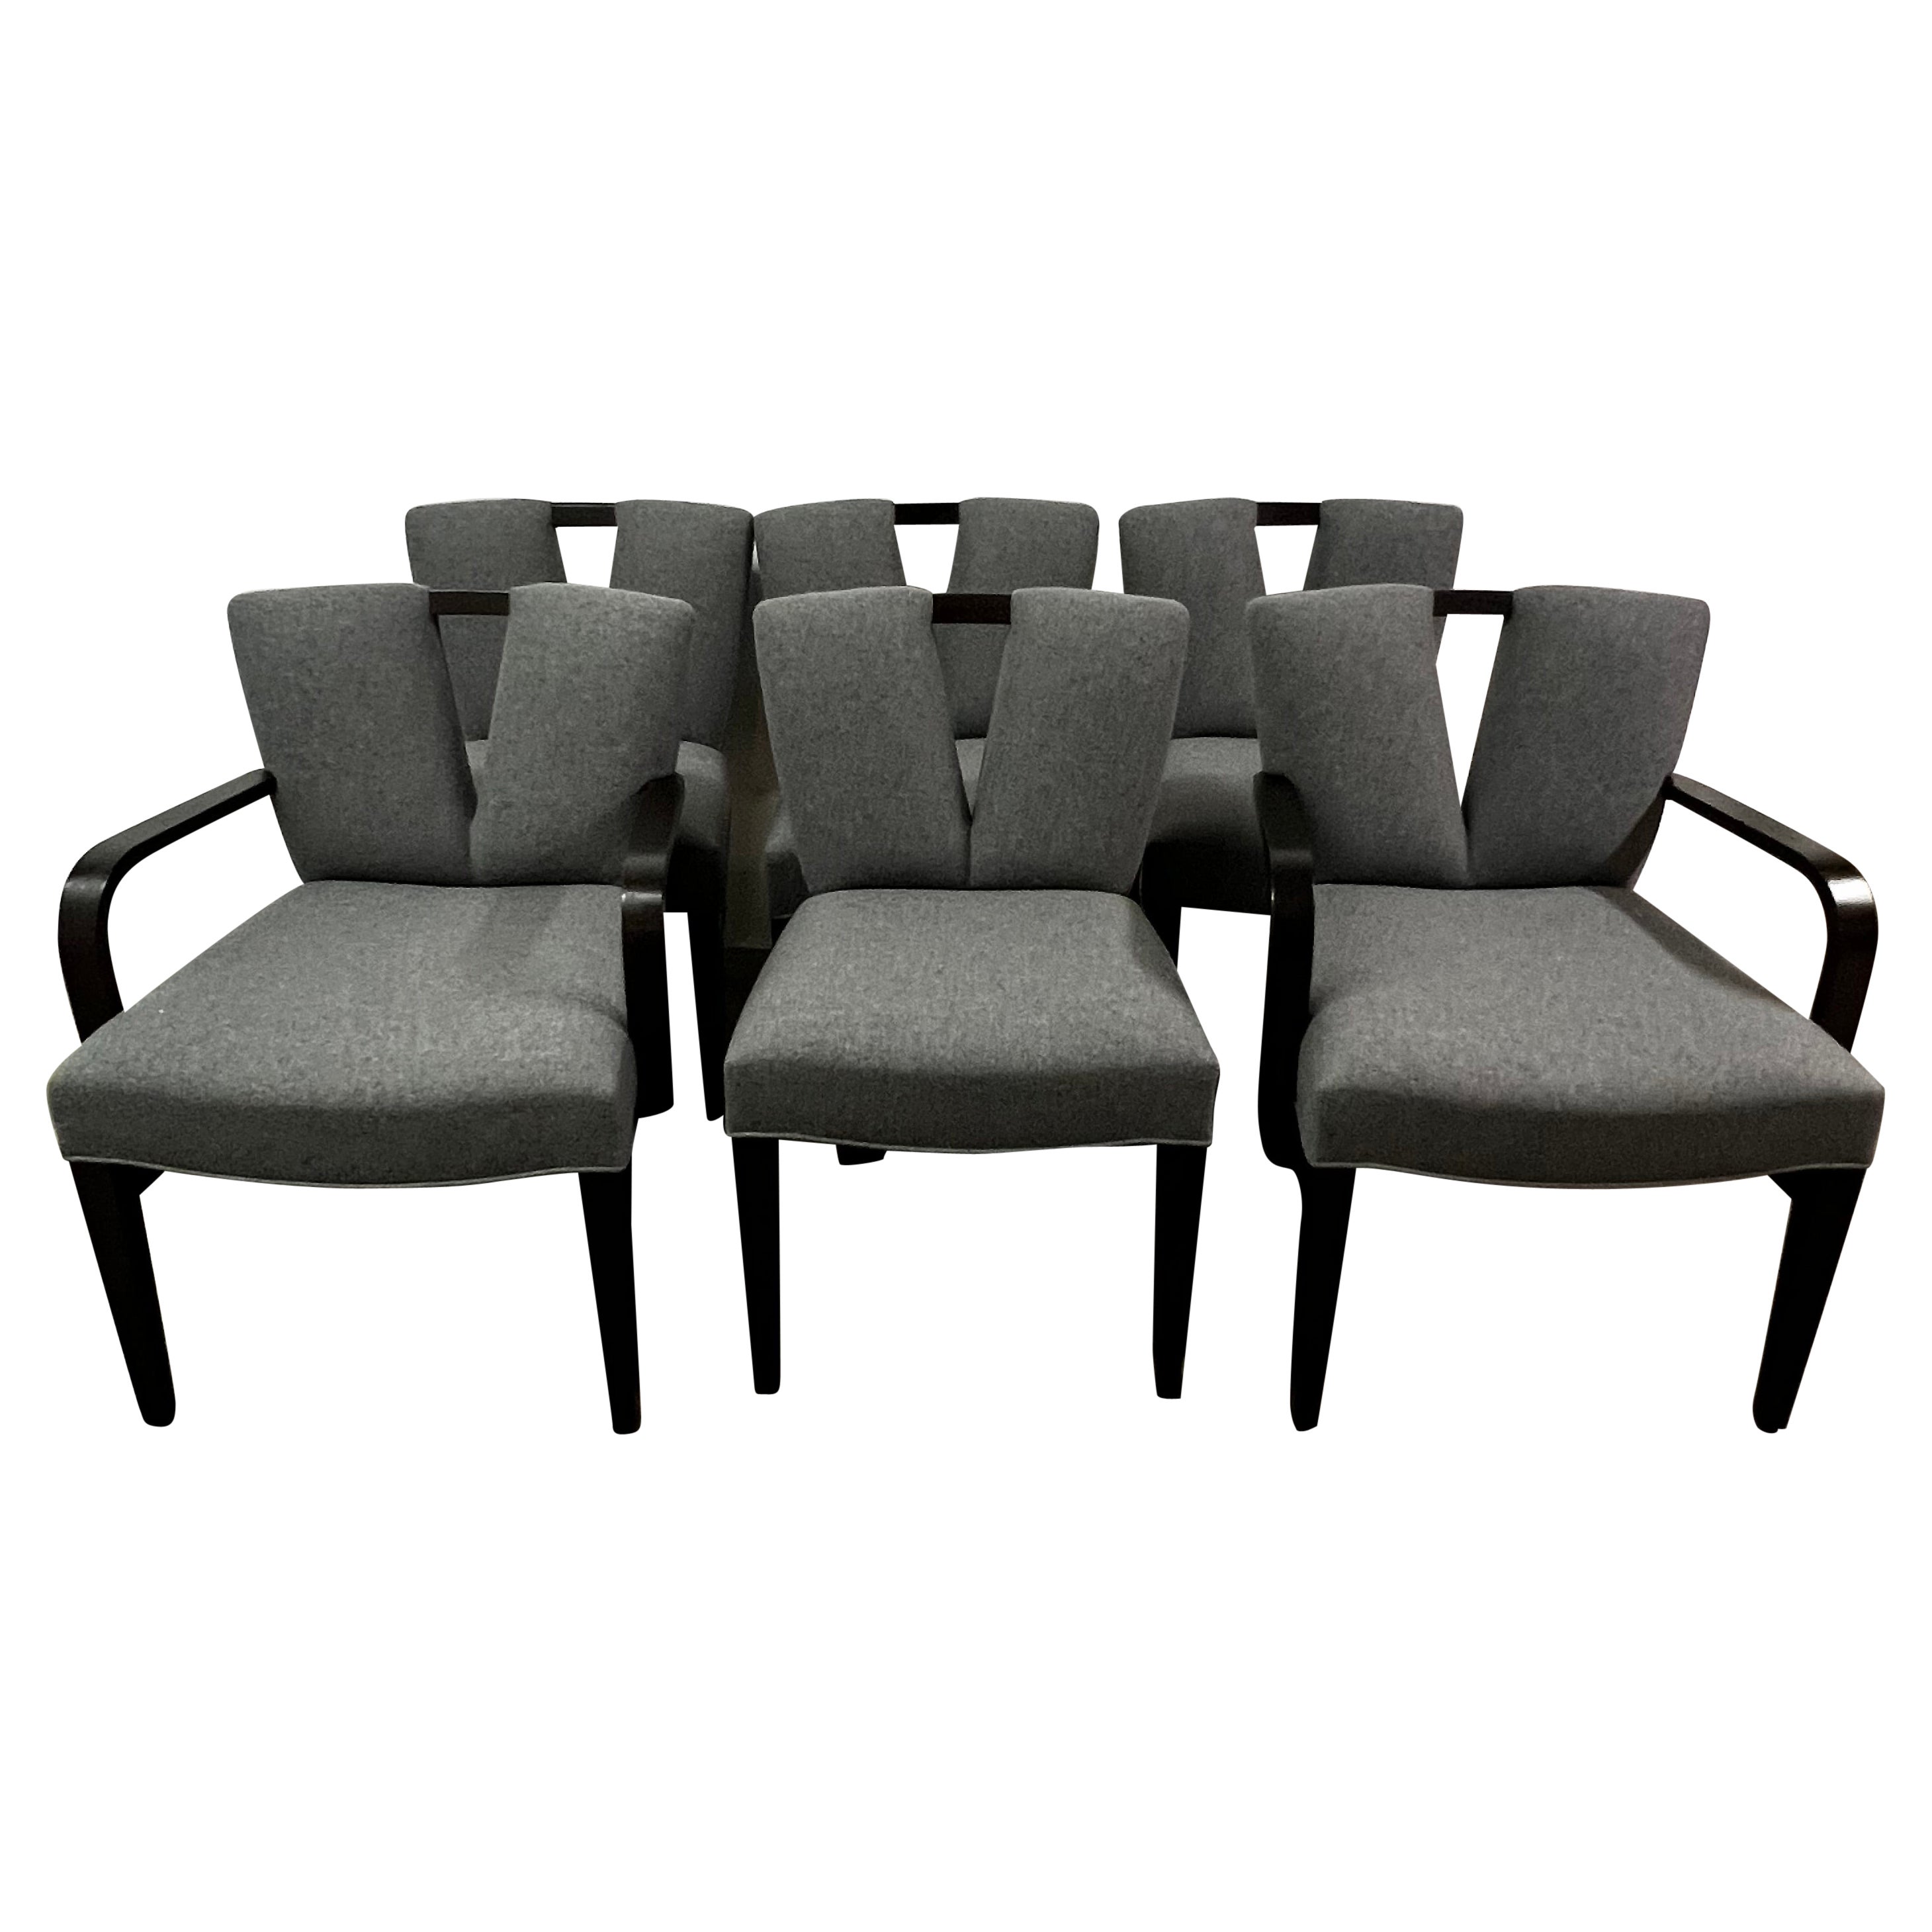 Sechs Korsett-Esszimmerstühle von Paul Frankl aus grauer Wolle